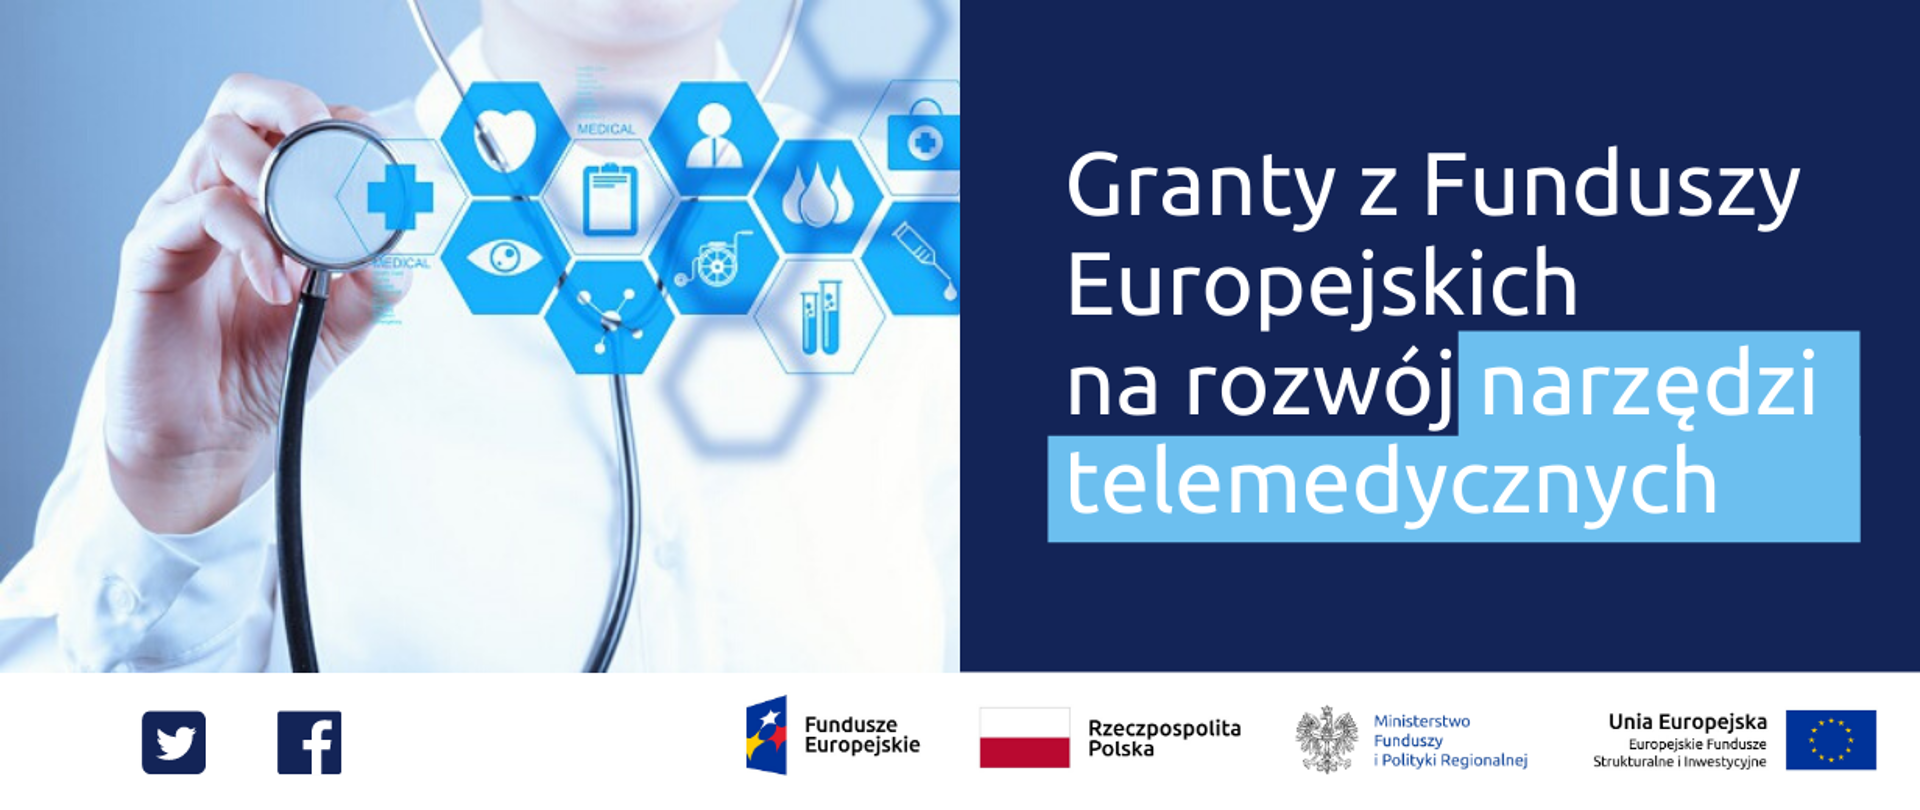 Grafika z tekstem: Granty z Funduszy Europejskich na rozwój narzędzi telemedycznych